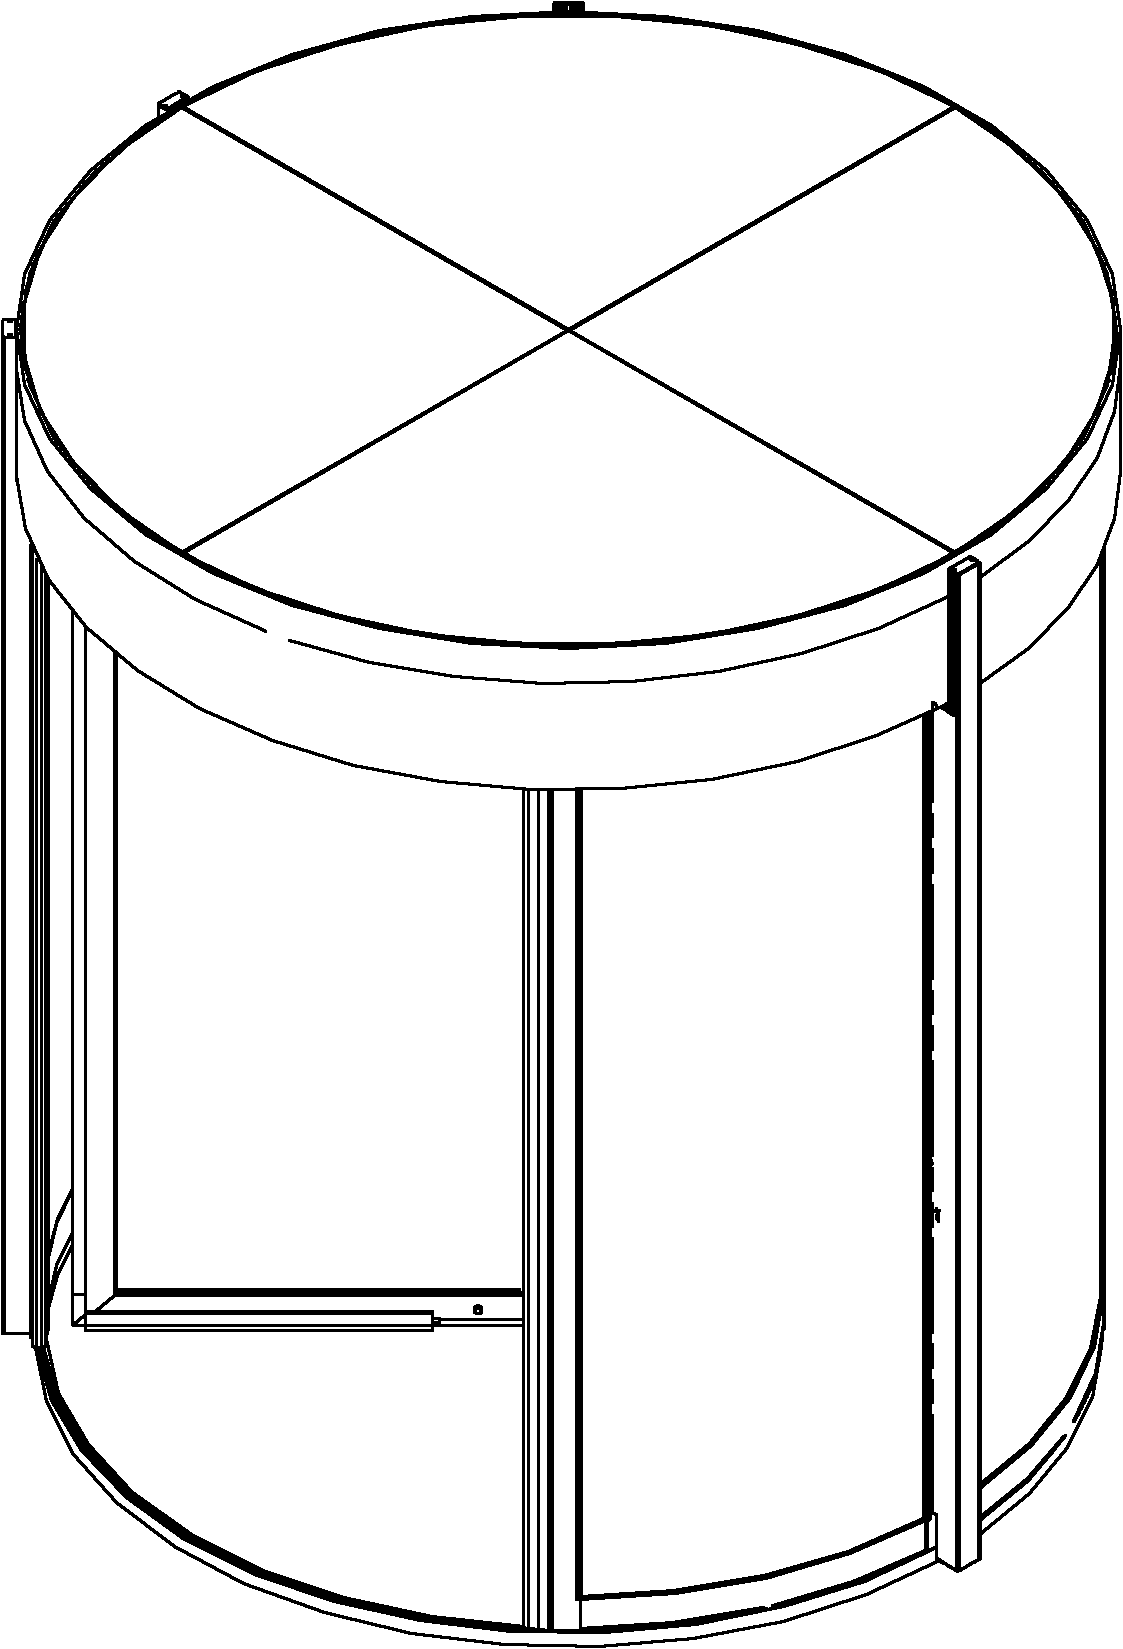 Single body rotating door with wide passageway